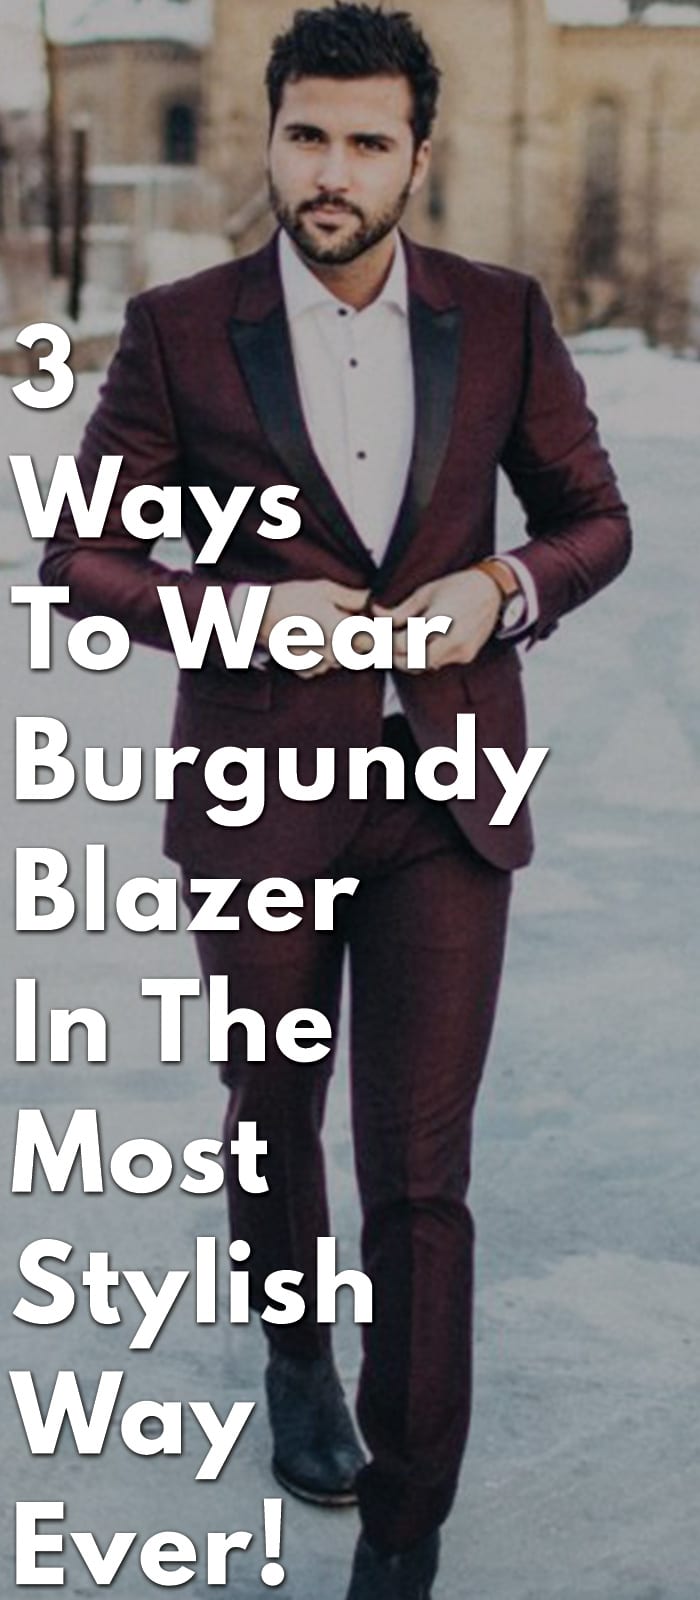 3-Ways-To-Wear-Burgundy-Blazer-In-The-Most-Stylish-Way-Ever!